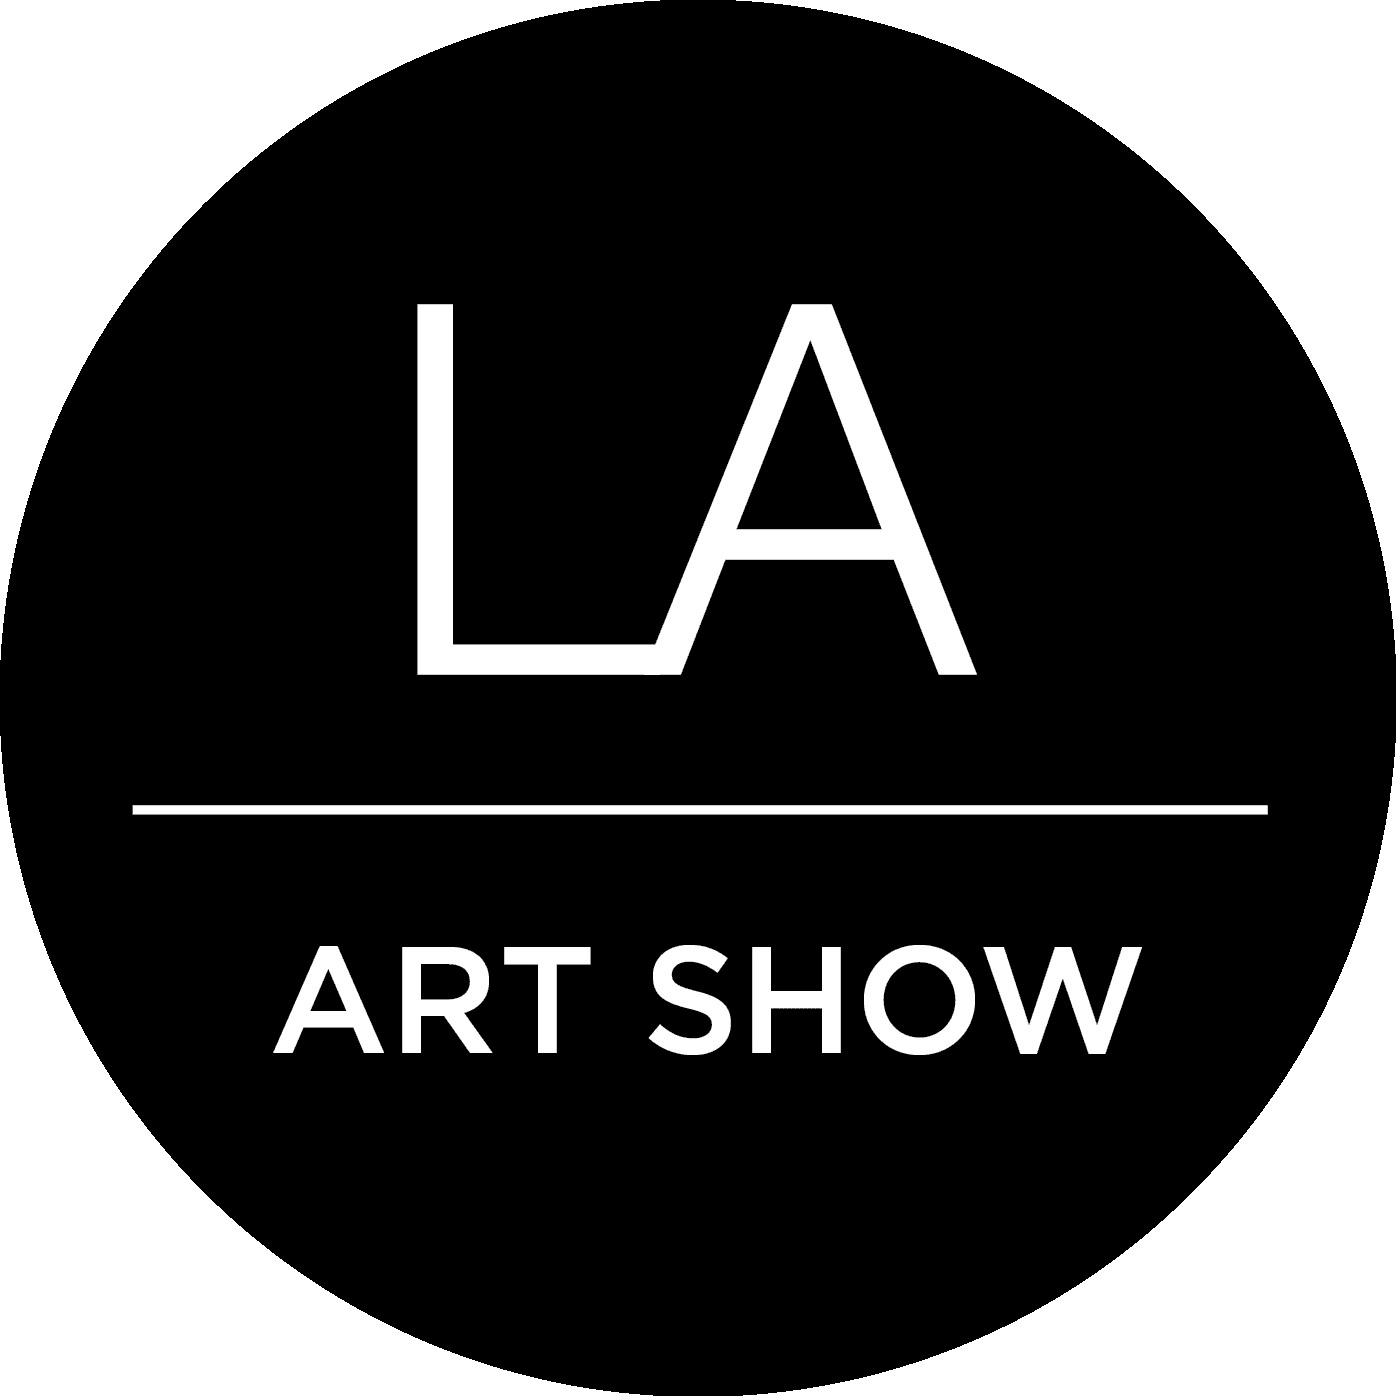 LA Art Show logo